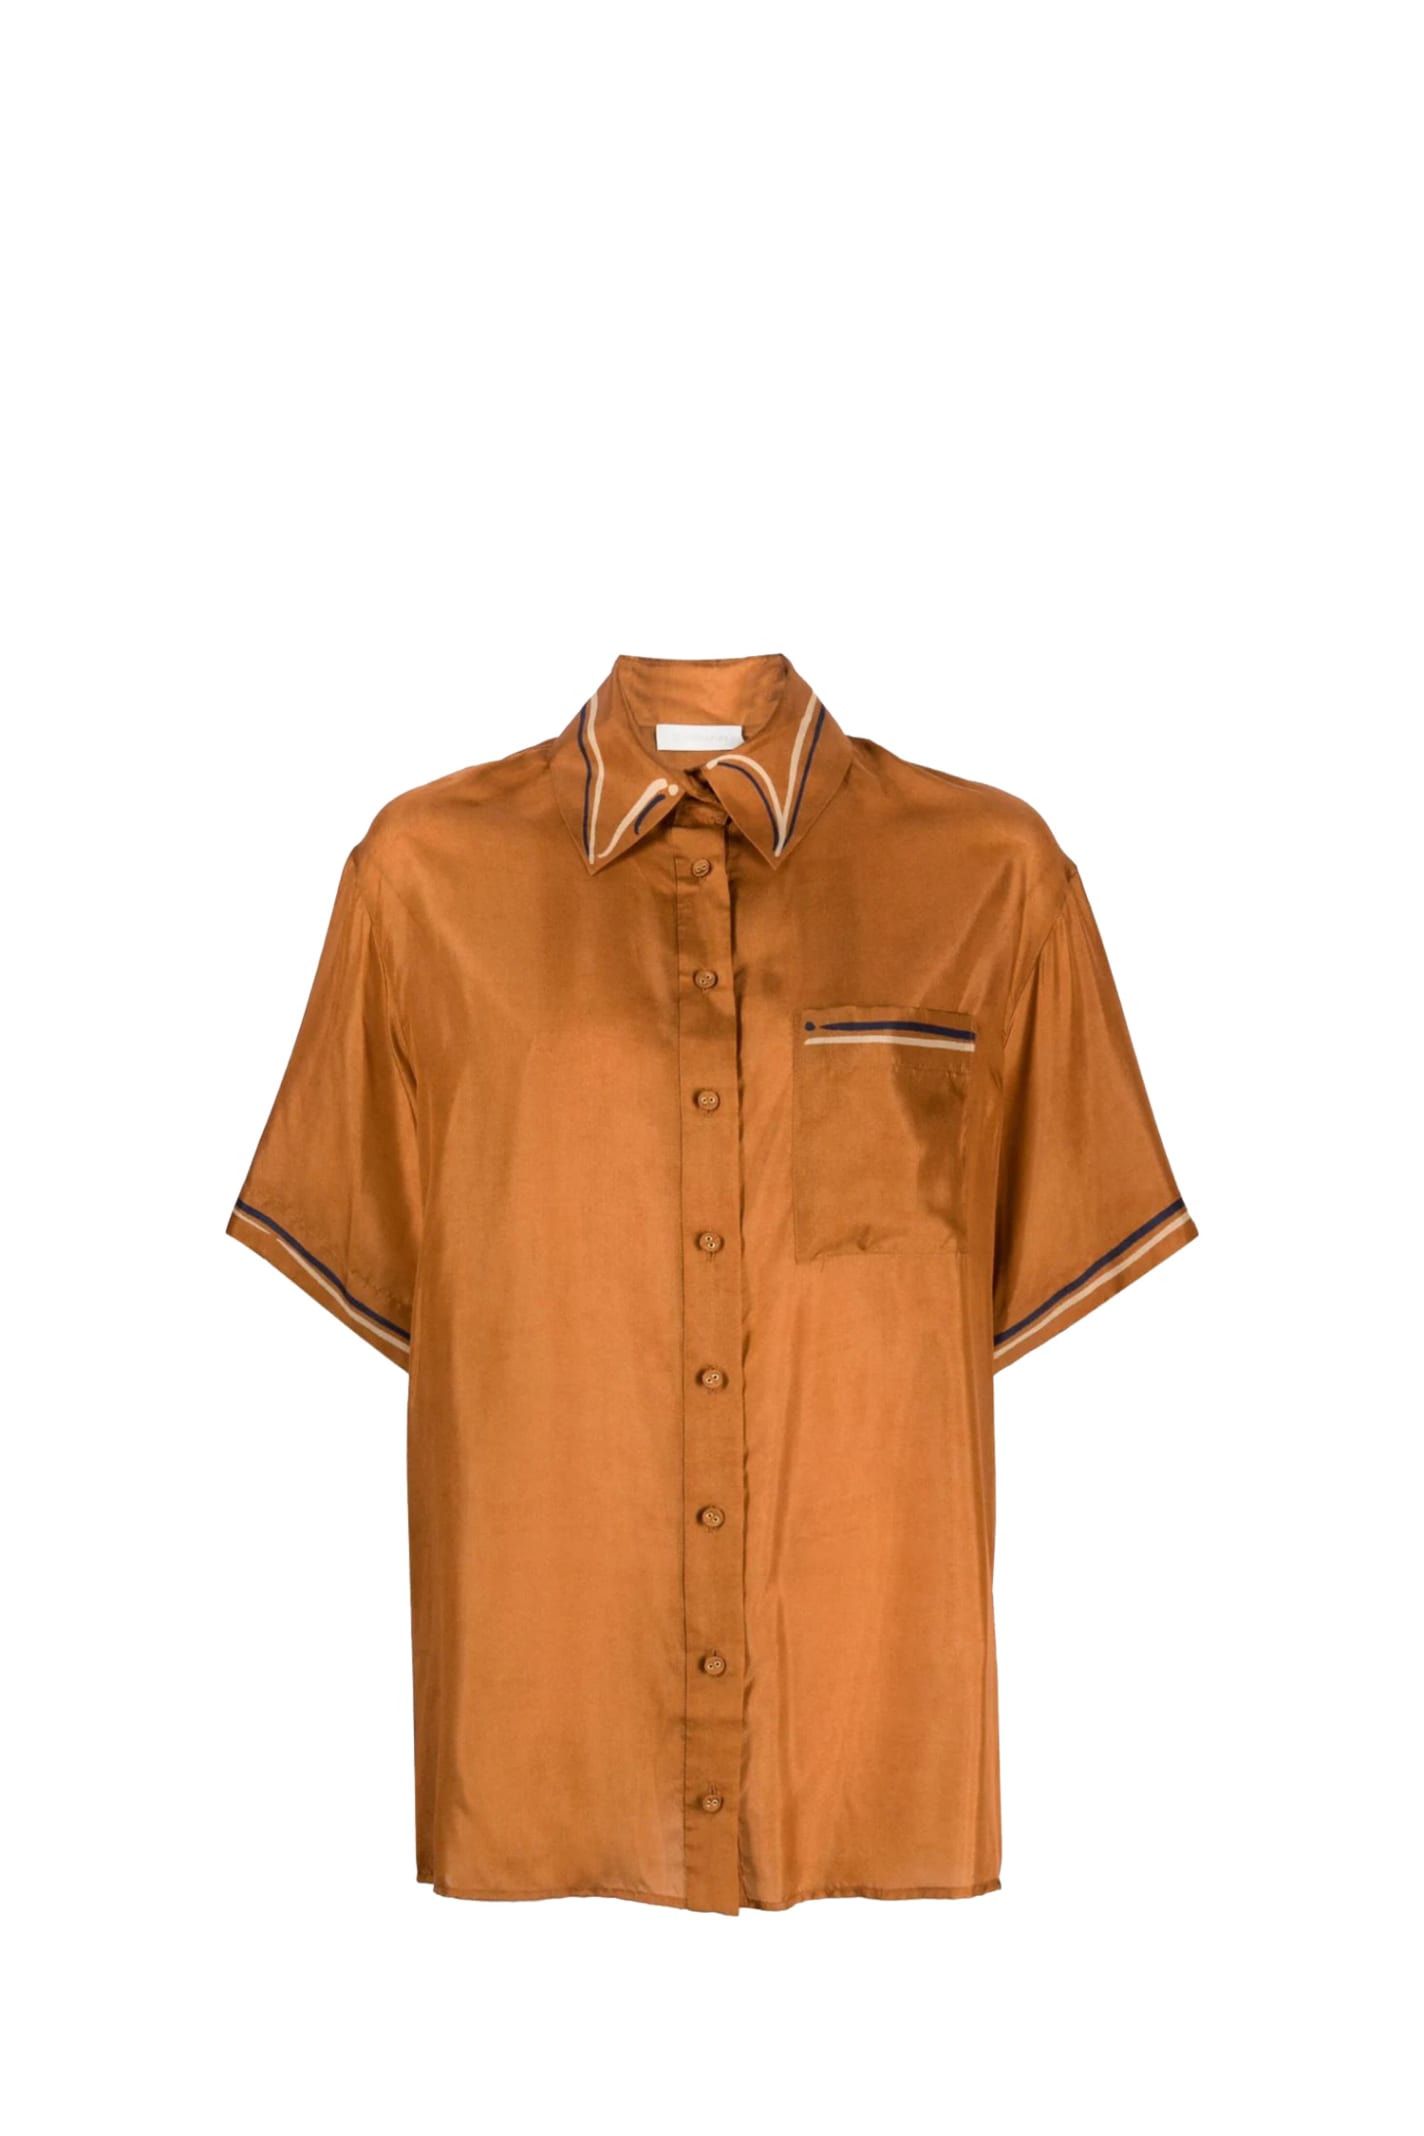 Zimmermann Shirt